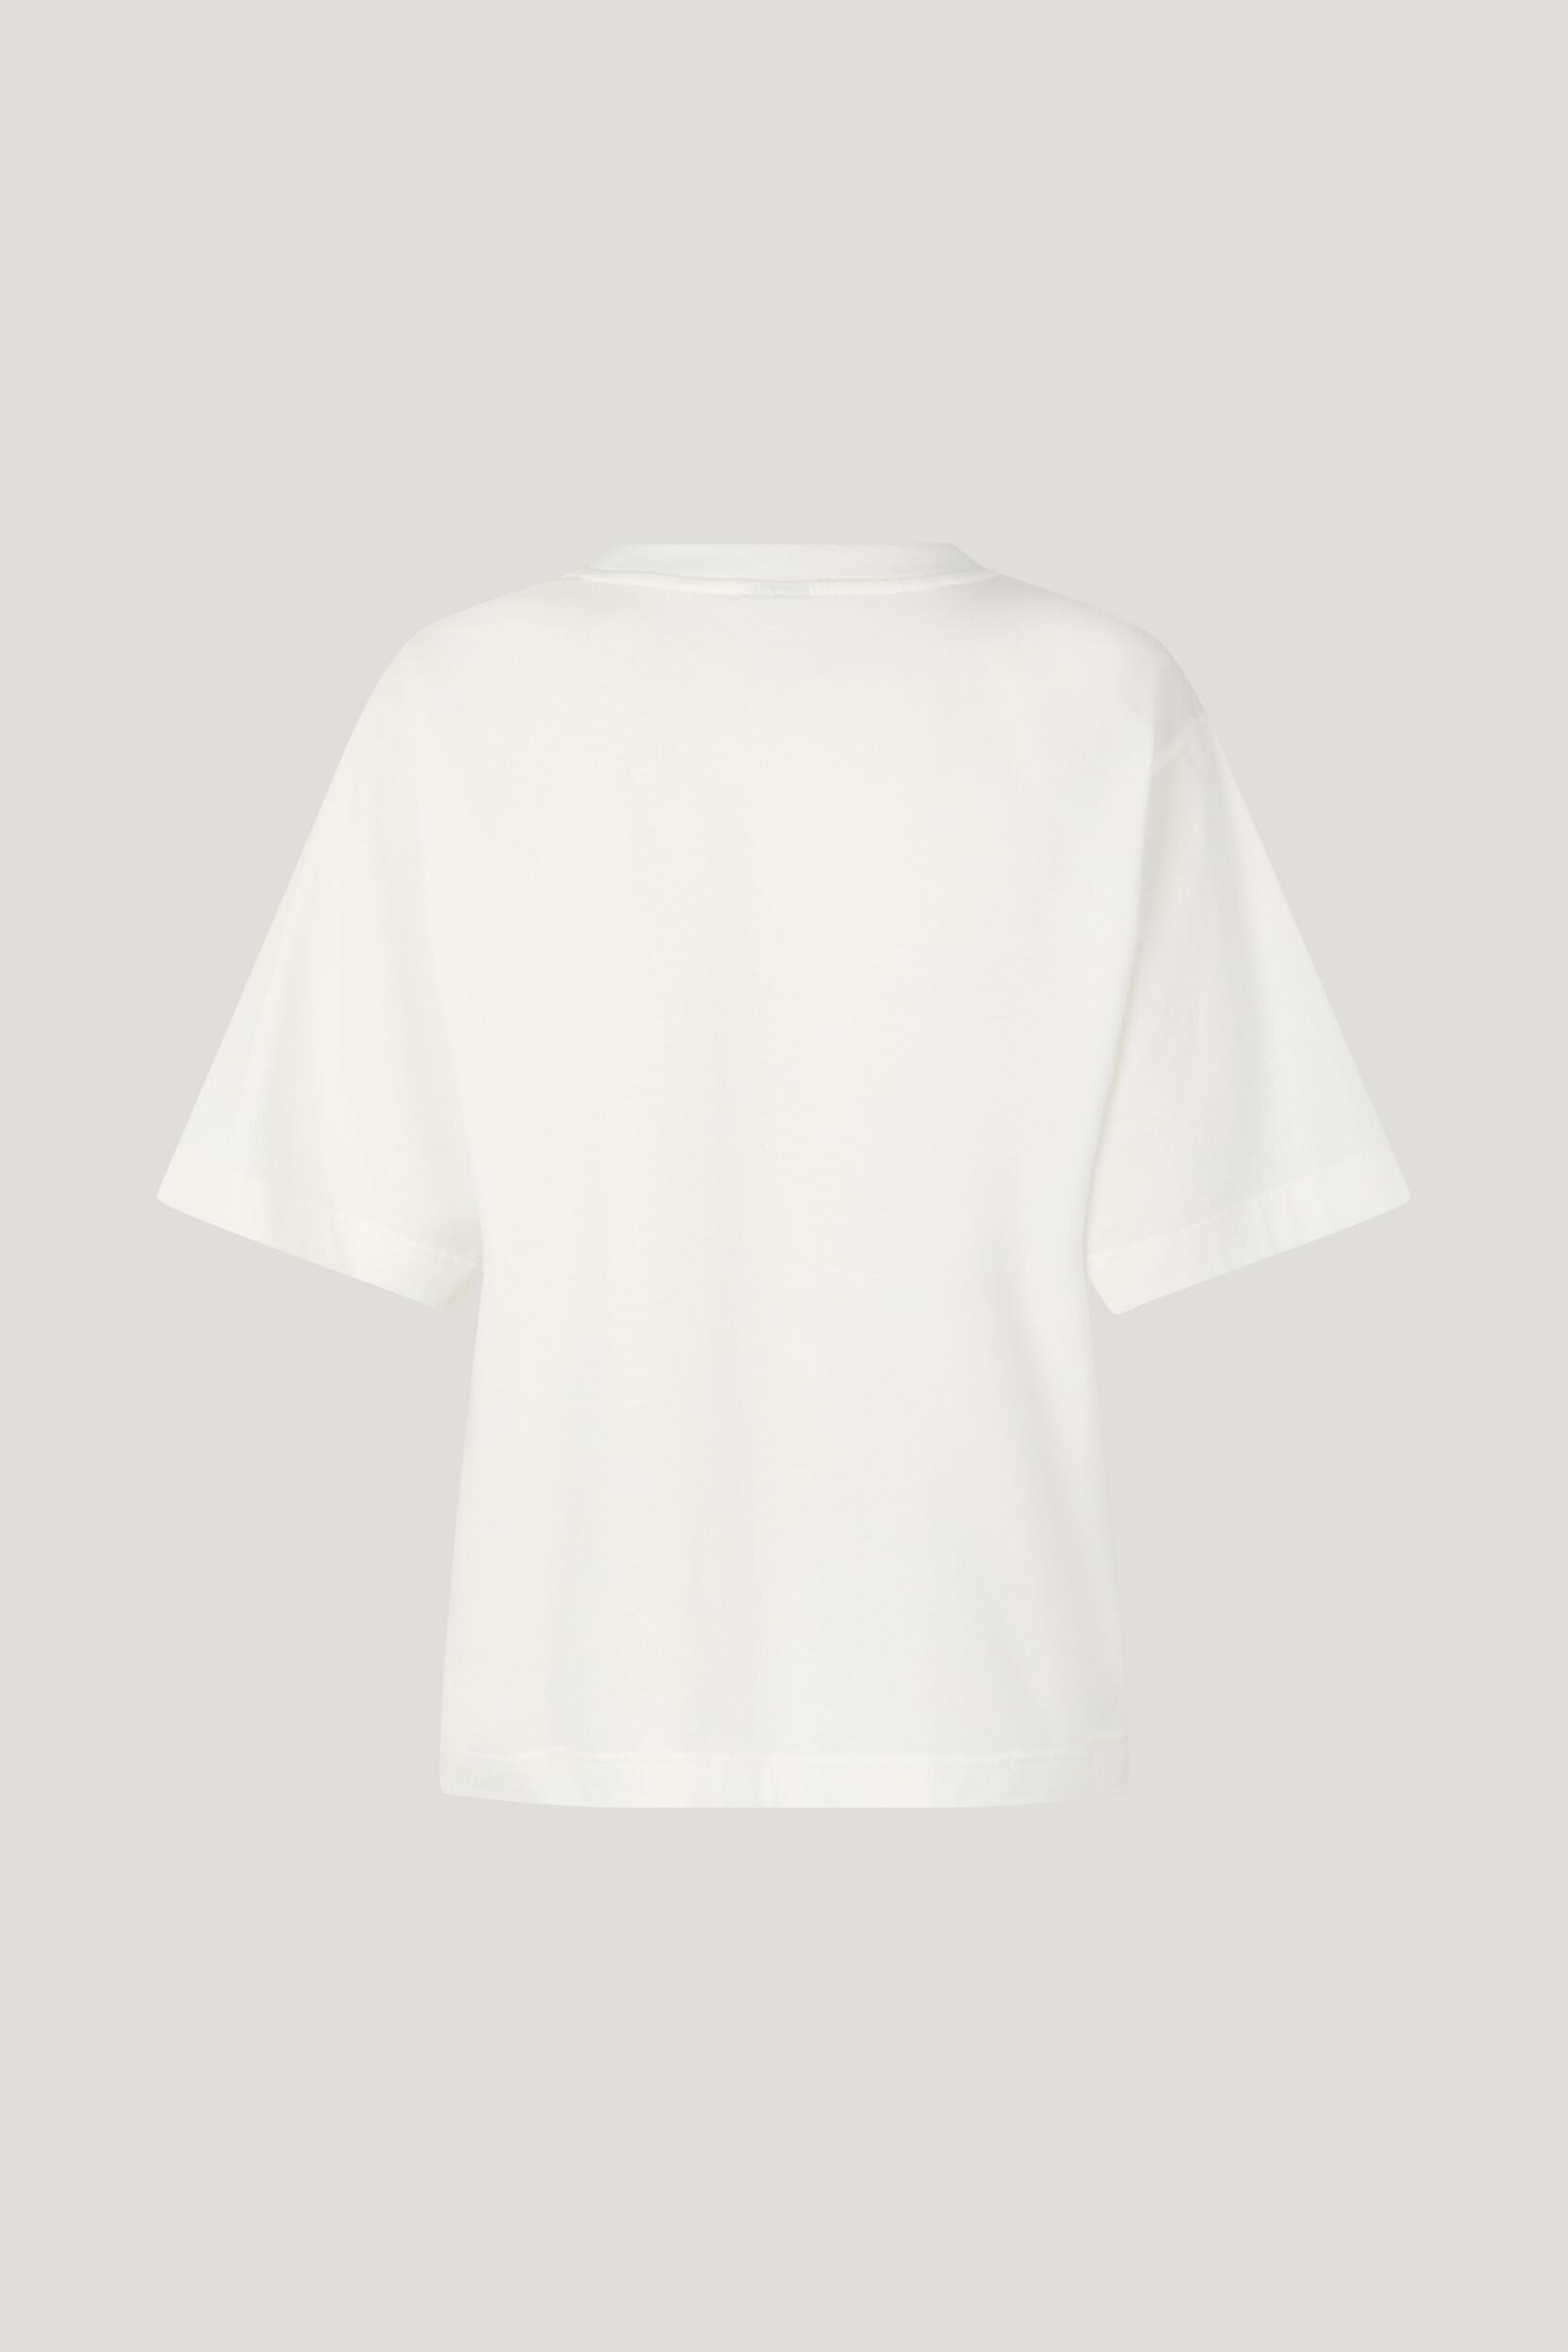 Baum - Jilli T-Shirt